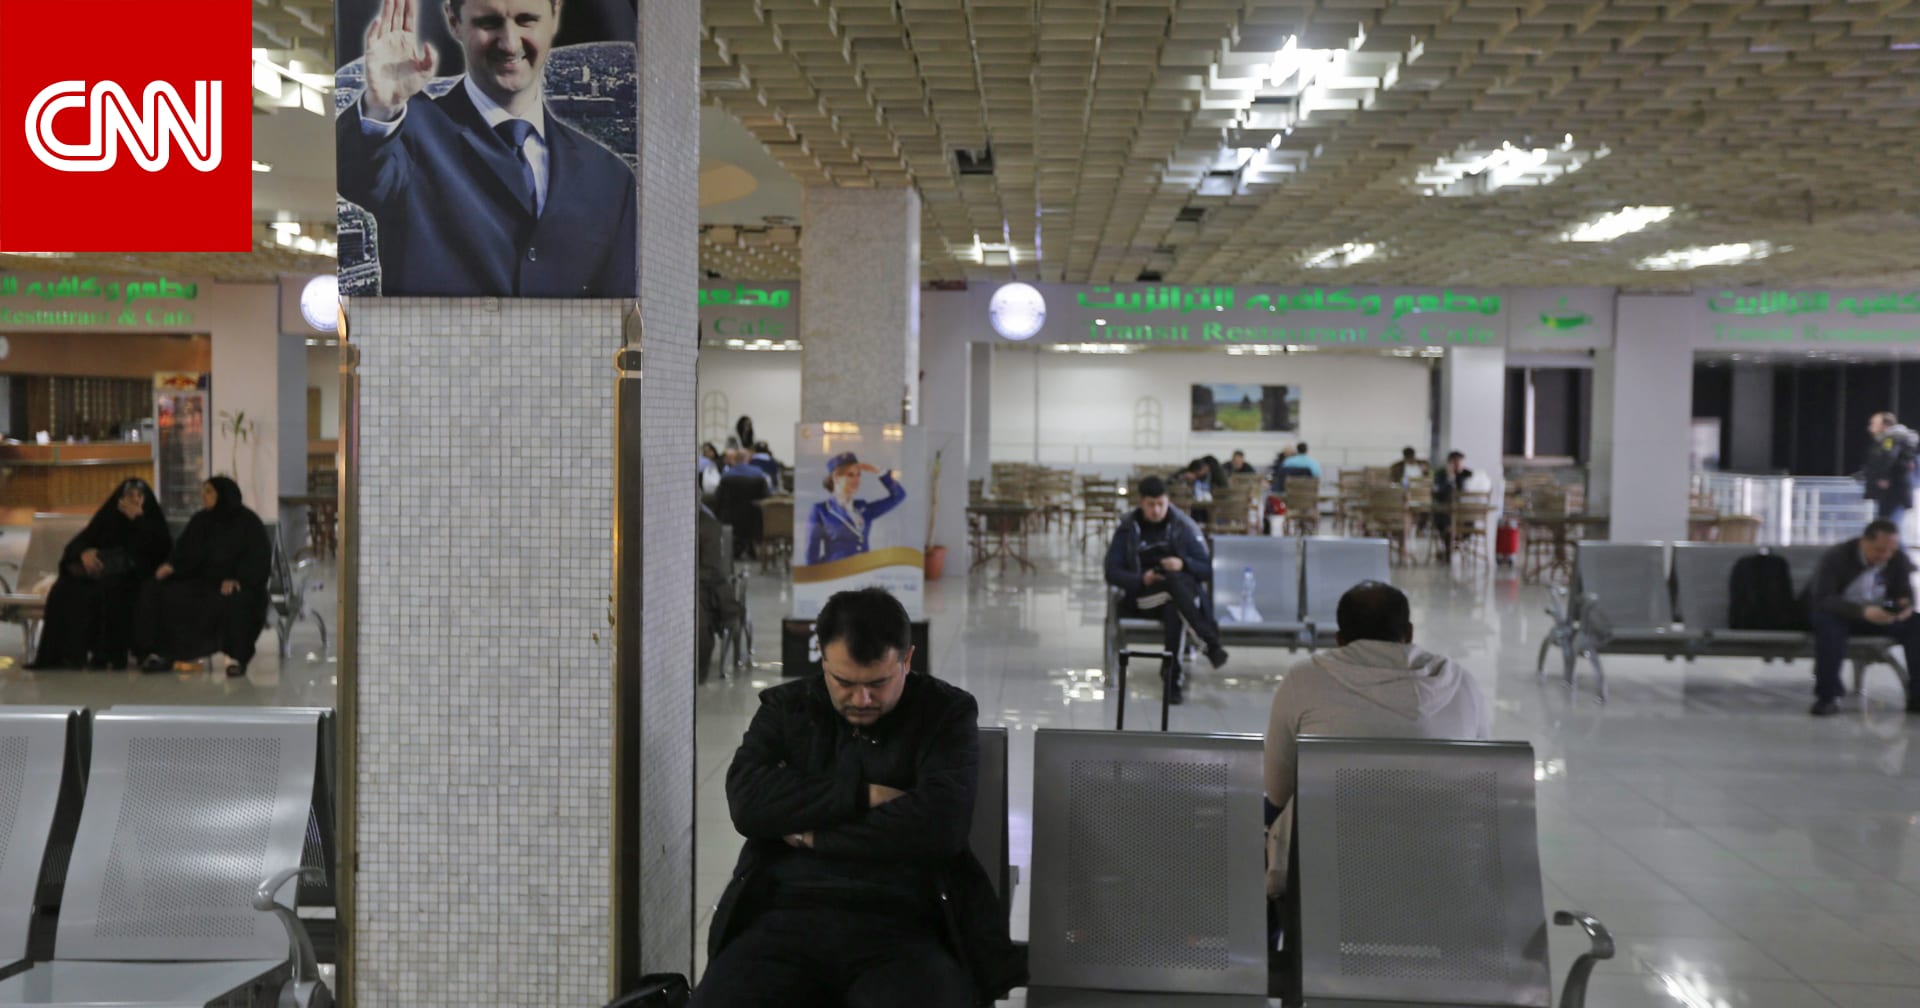 سوريا تعلق الدراسة وتخفض ساعات العمل للحد من تفشي فيروس كورونا - CNN Arabic